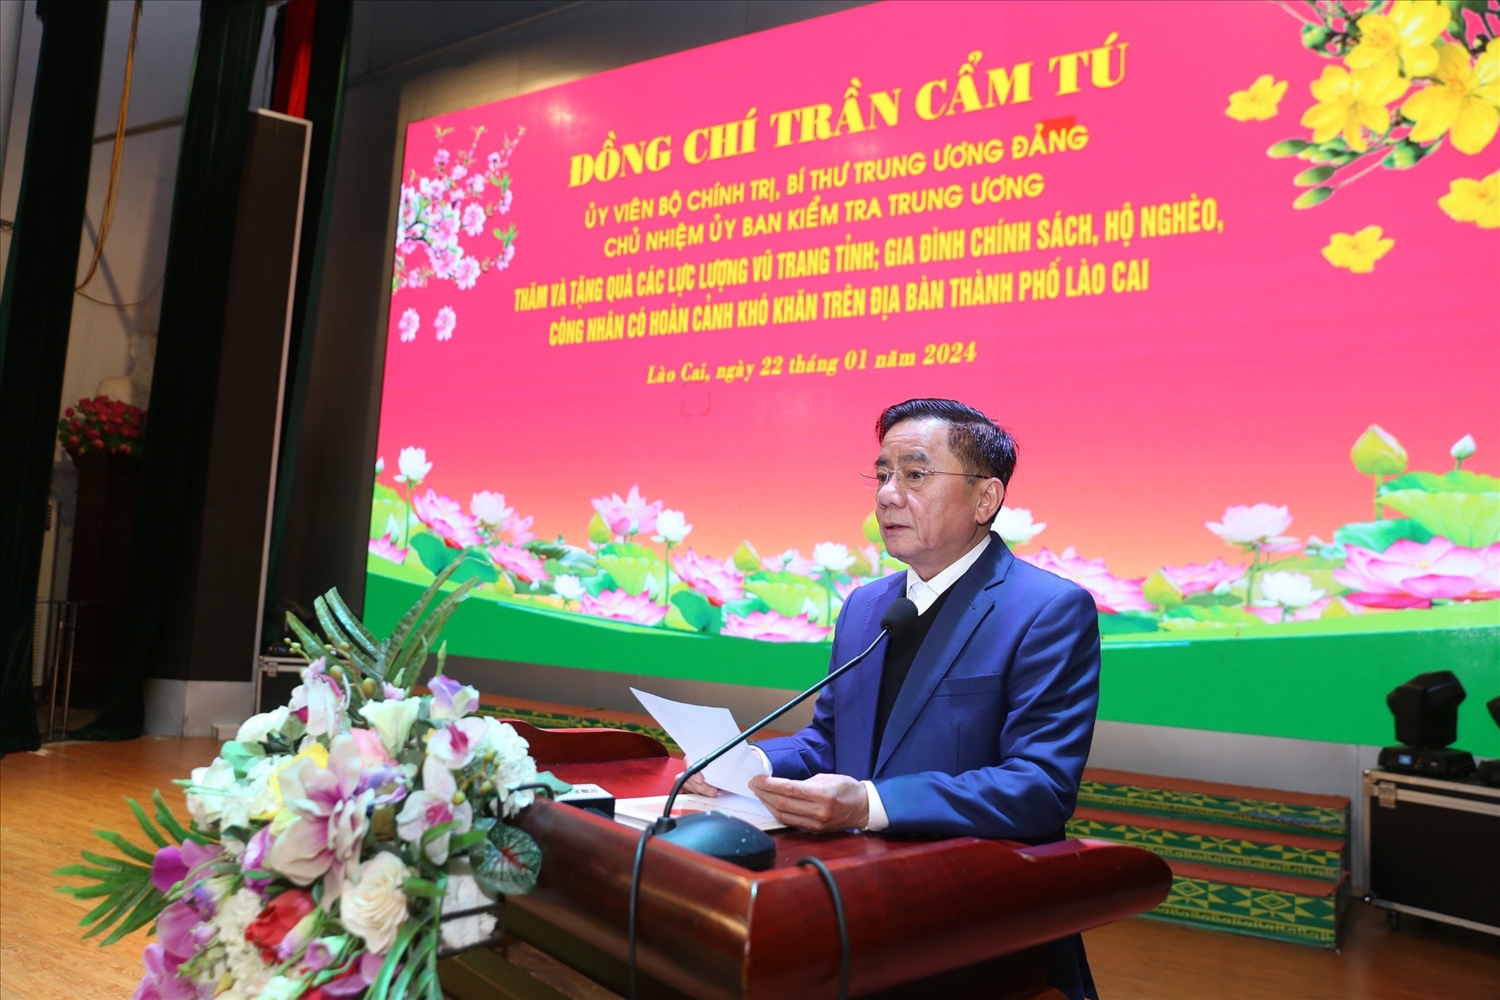 Đồng chí Trần Cẩm Tú đề nghị cấp ủy, chính quyền các cấp cần quan tâm chăm lo tết cho người nghèo, người có hoàn cảnh khó khăn